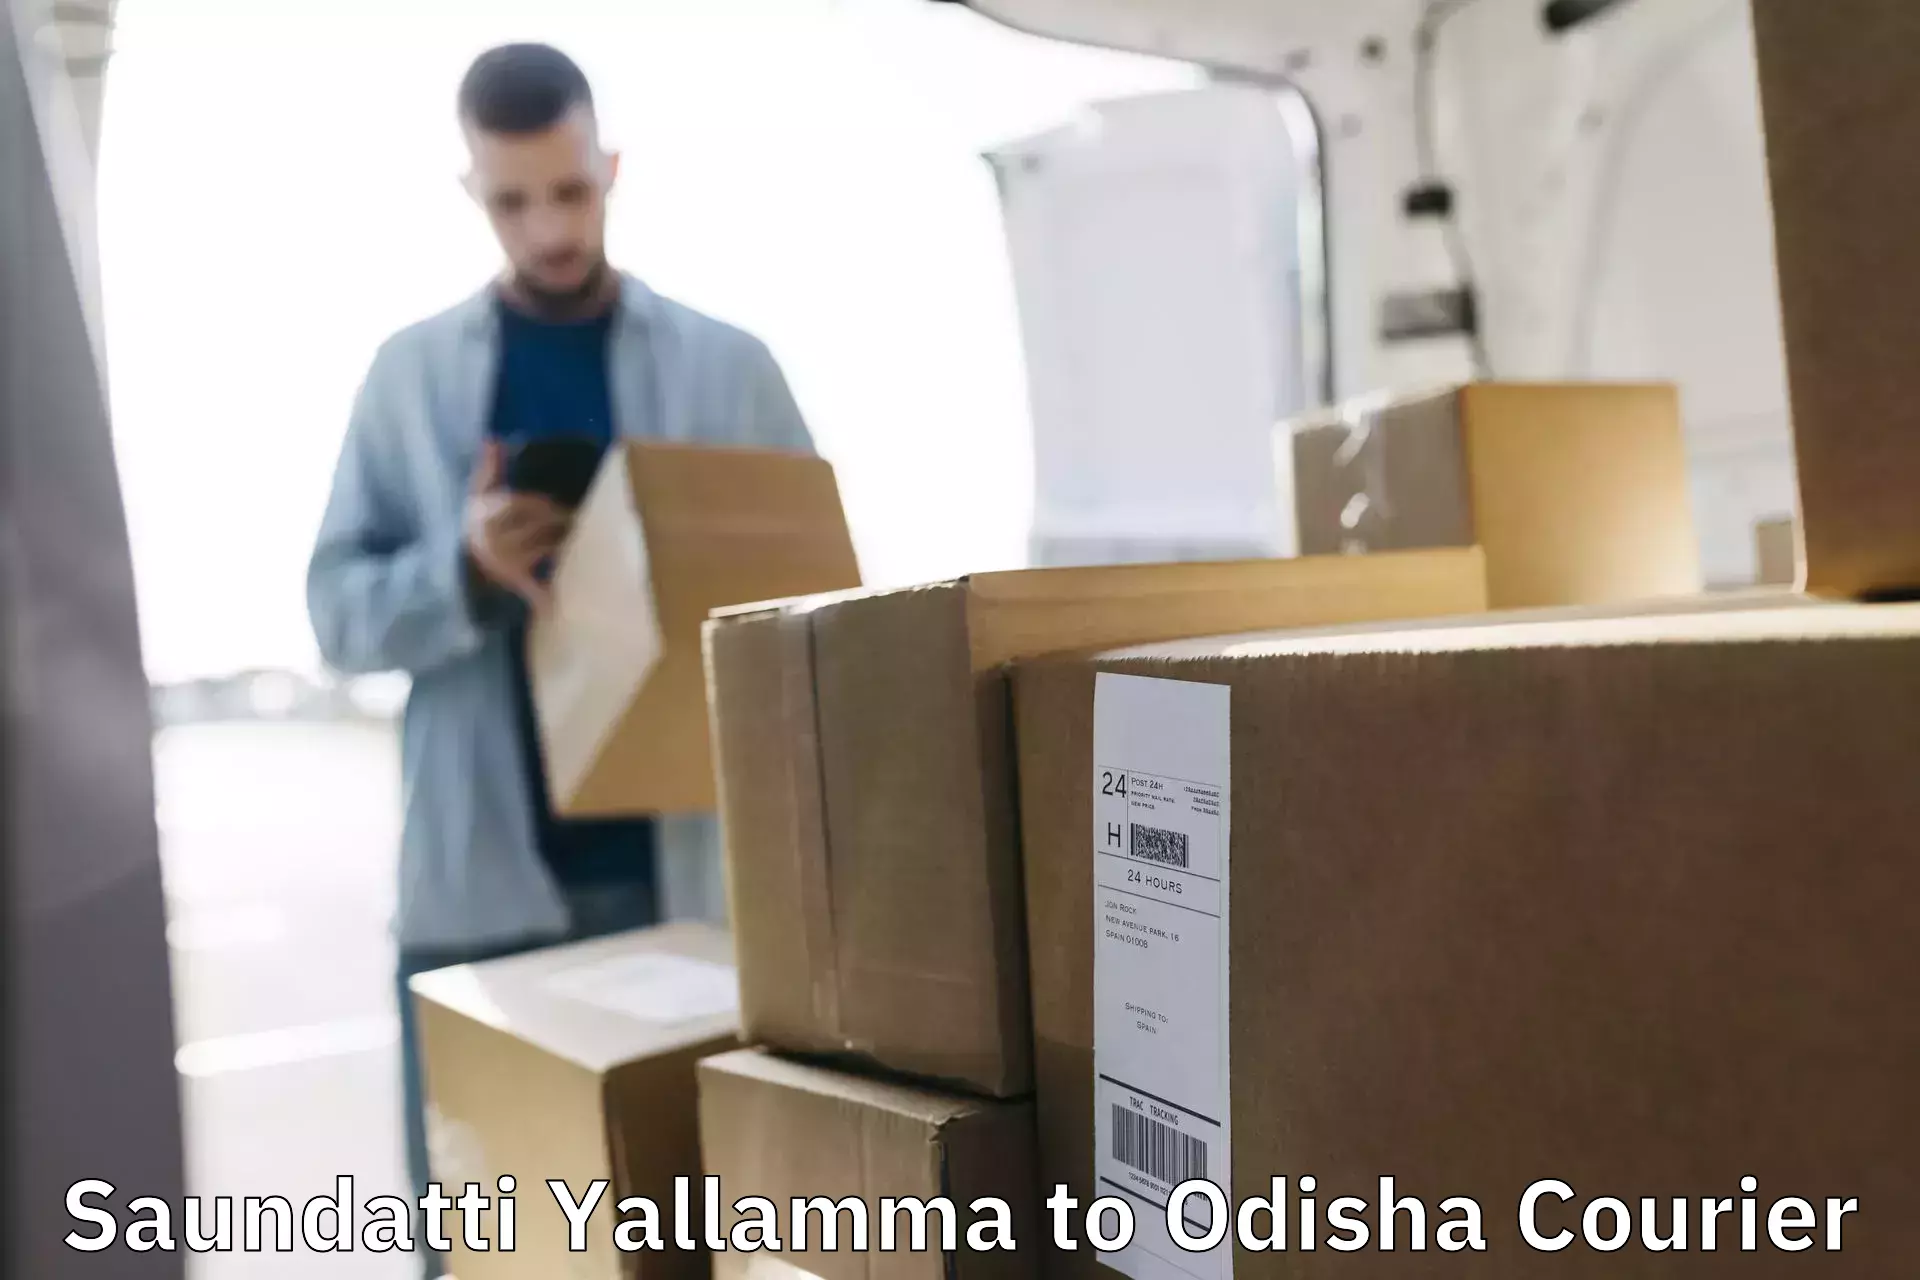 Efficient parcel tracking Saundatti Yallamma to Behrampur